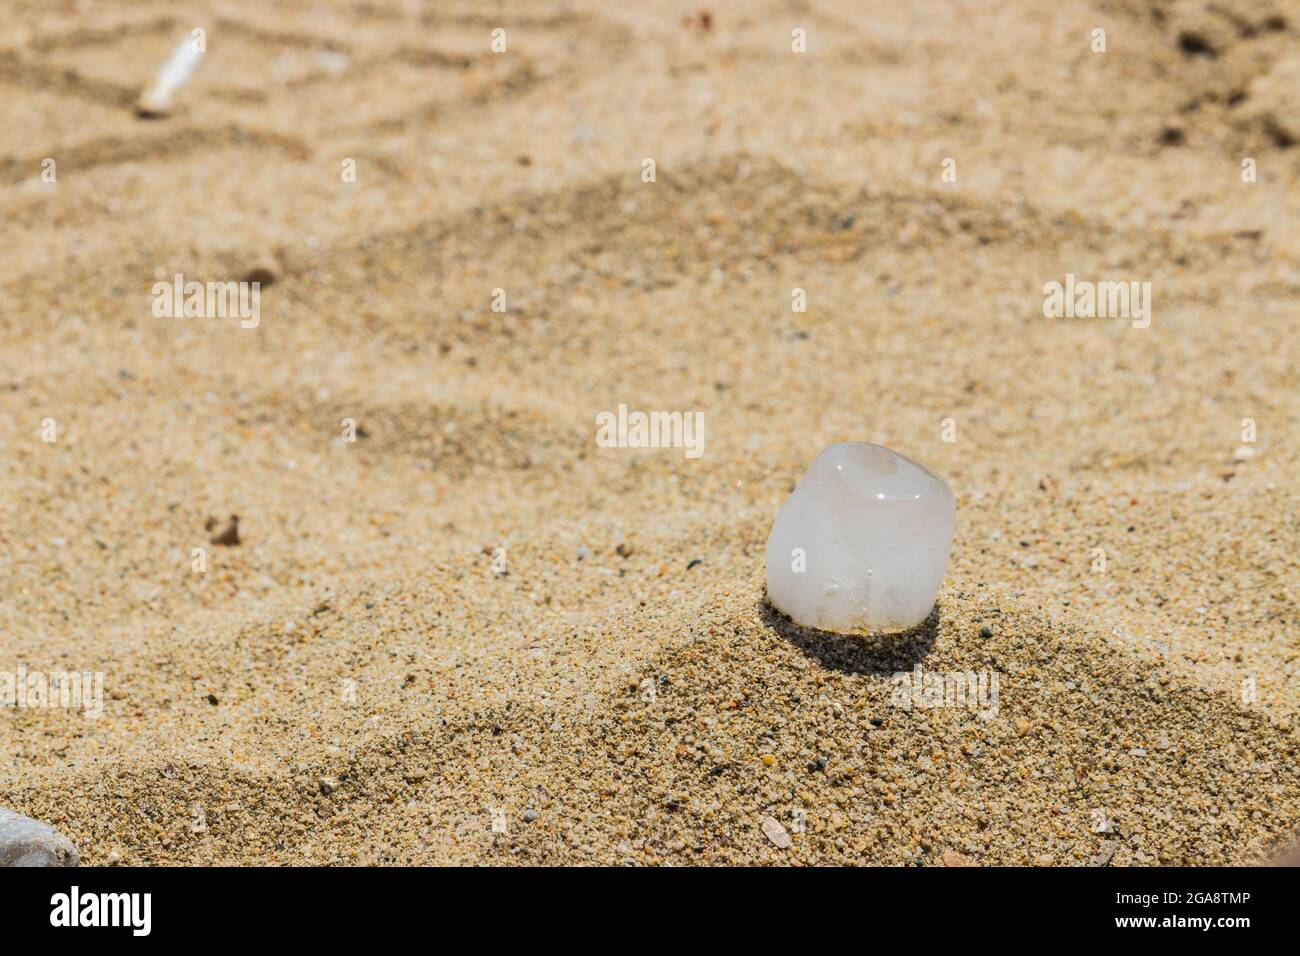 Cubito de hielo en la arena durante un día soleado Foto de stock